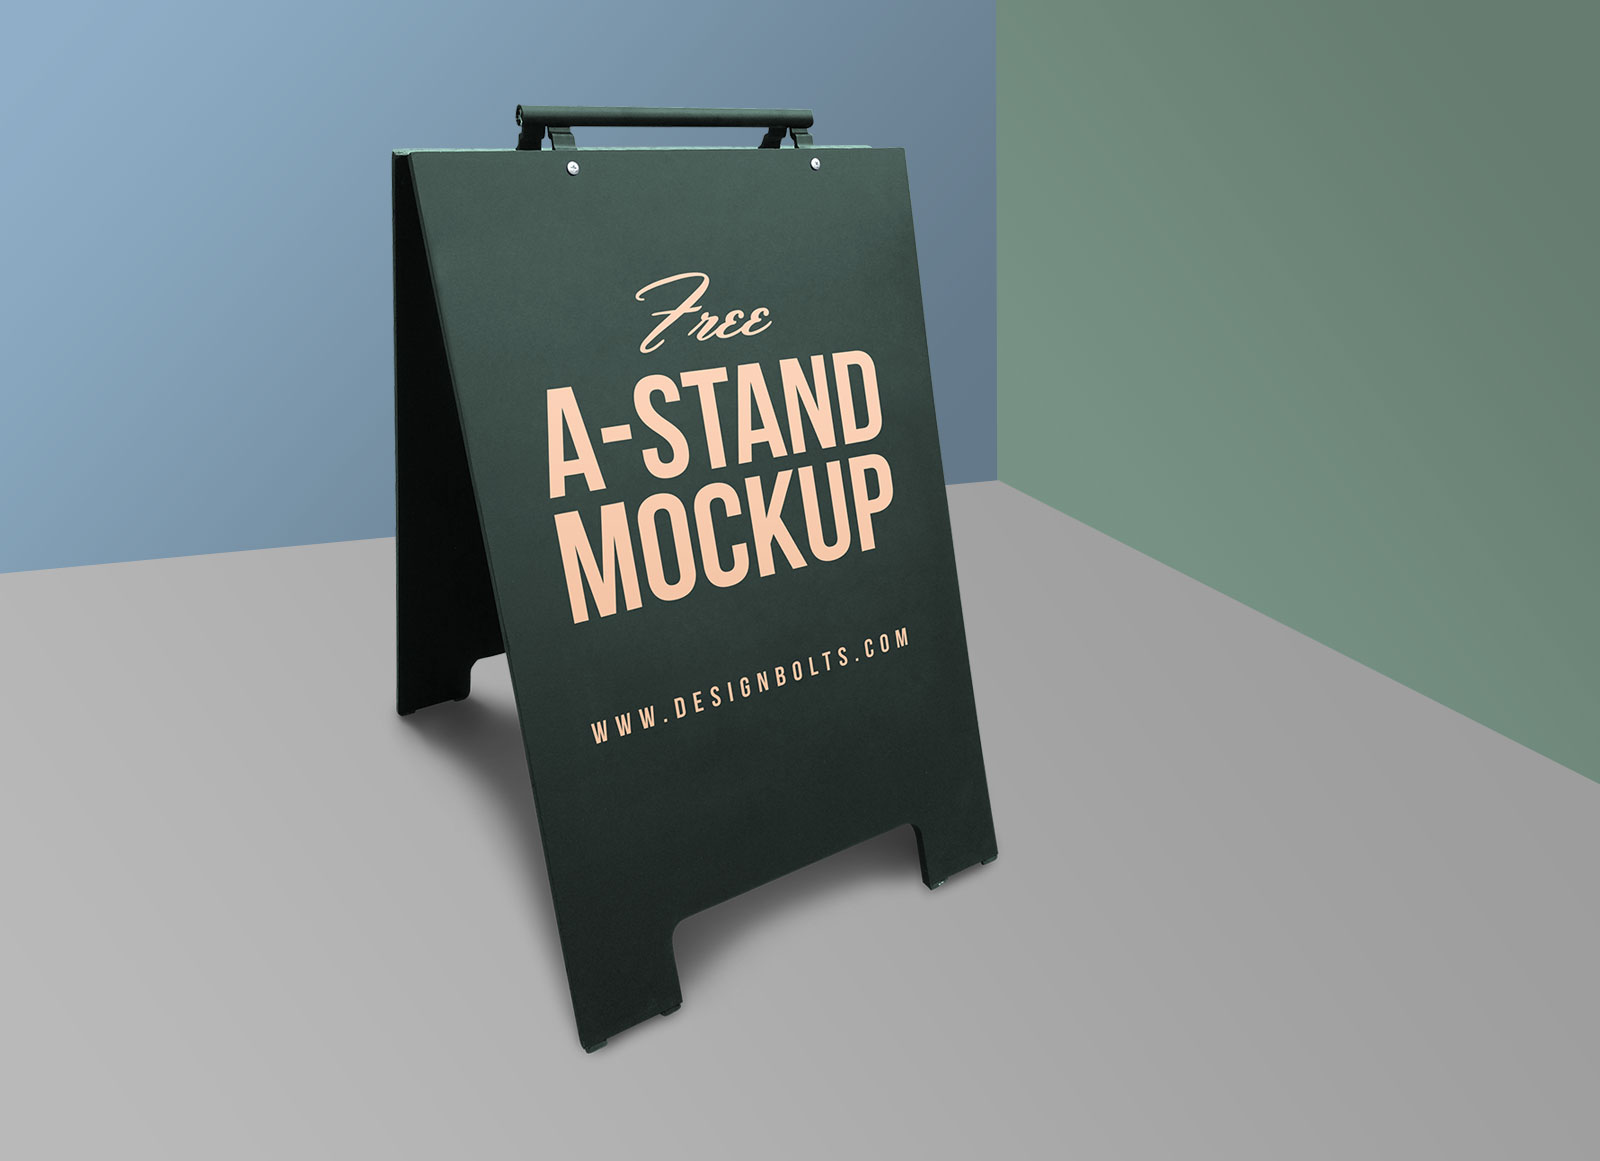 Publicité extérieure A-stand Mockup